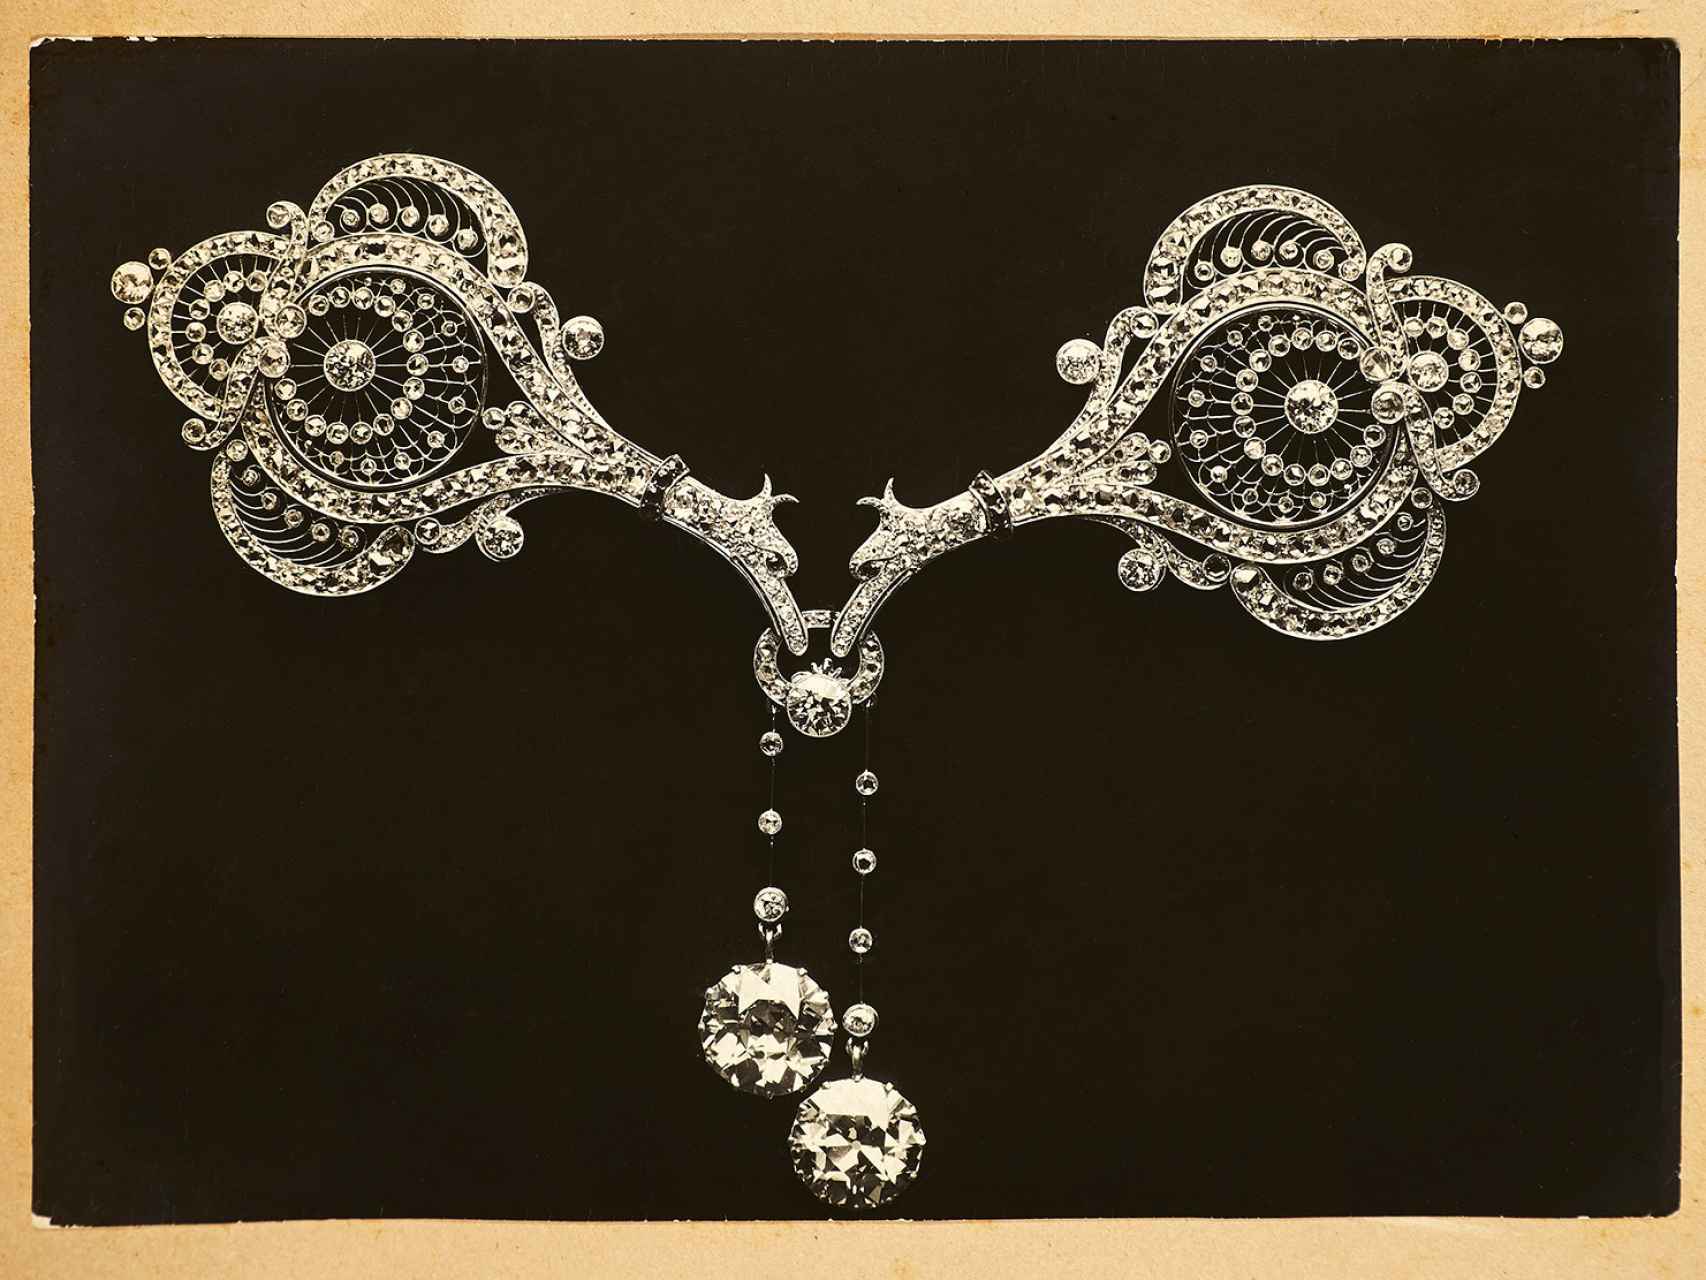 Broche en forma de pájaros de platino y diamantes, una de las joyas de Joaquim Cabot realizada hacia 1905